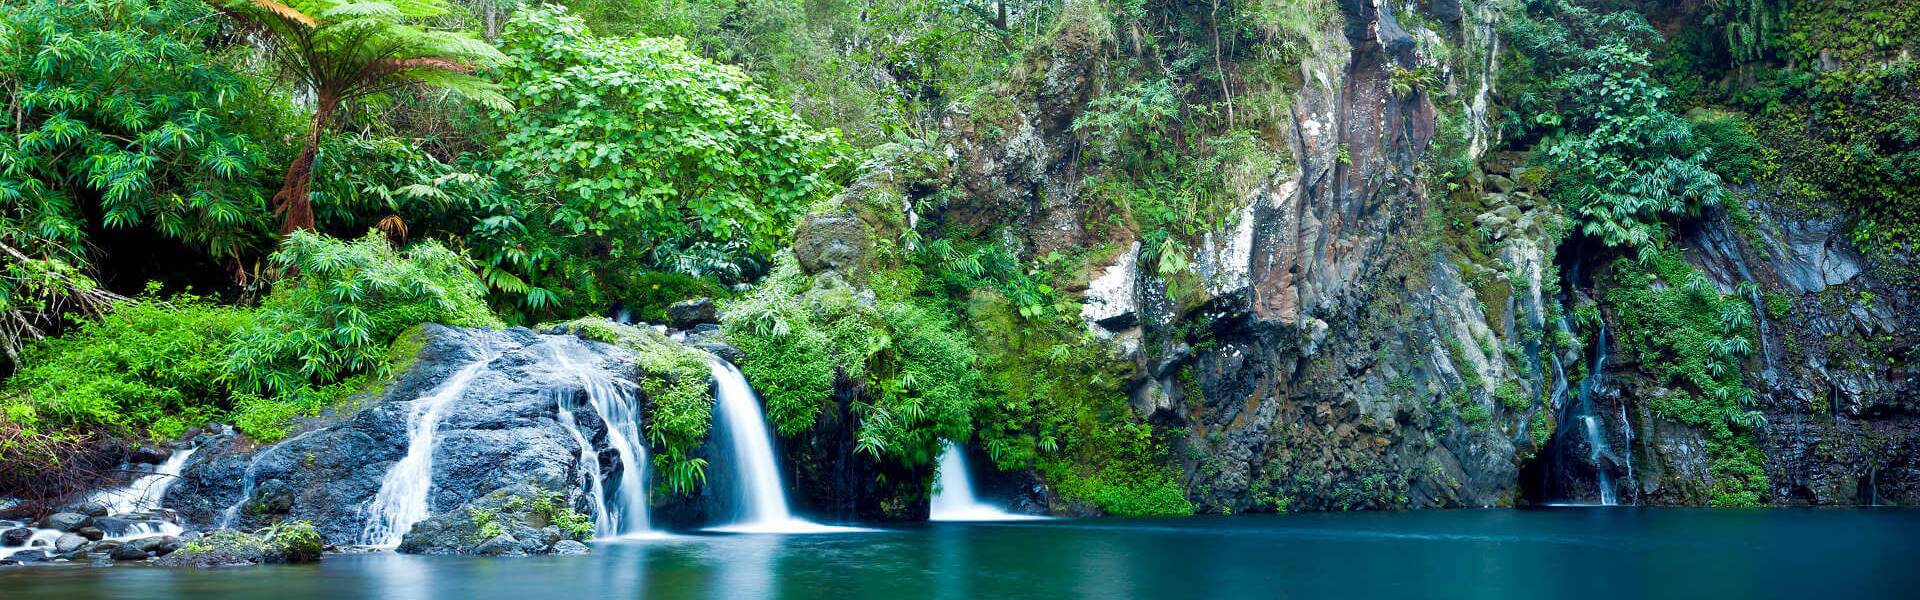 Der Wasserfall des Flusses Langevin befindet sich in der Gemeinde Saint-Joseph auf Reunion